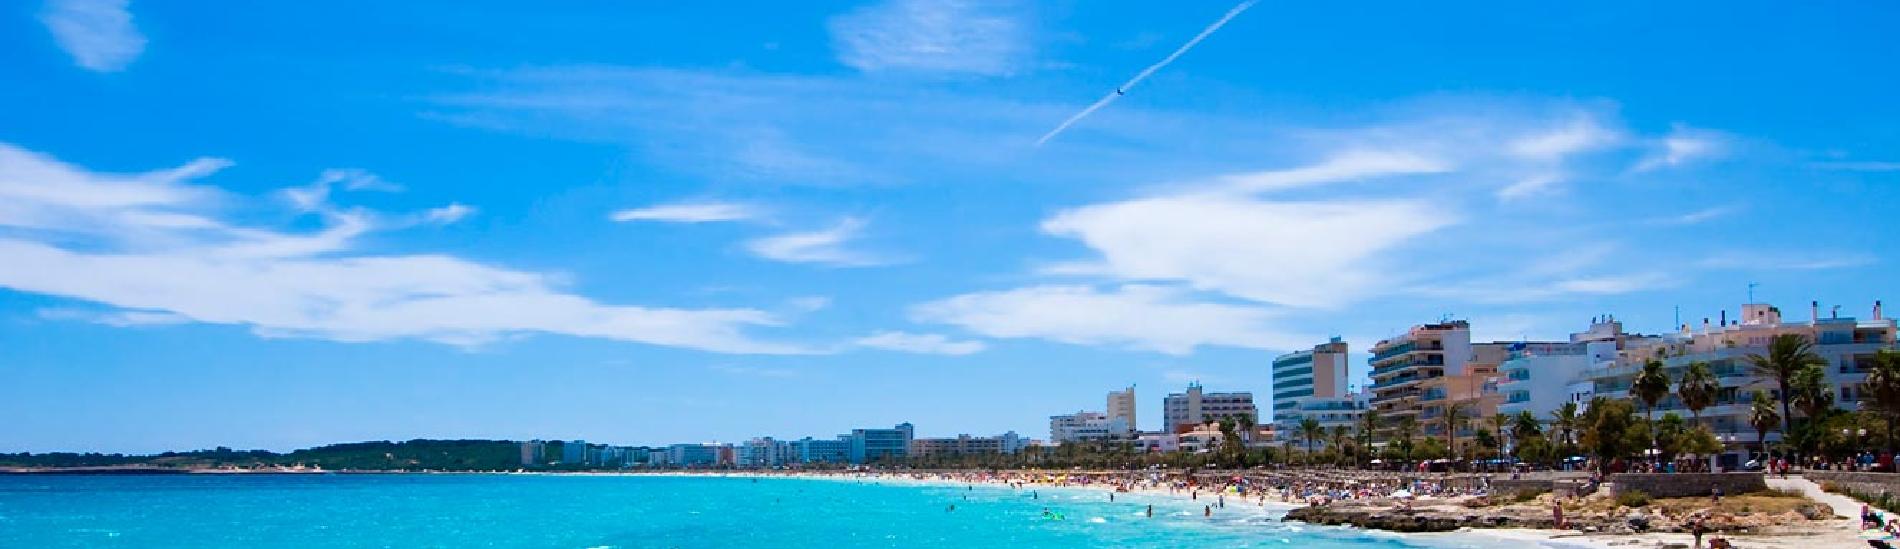 Playa de Cala Millor